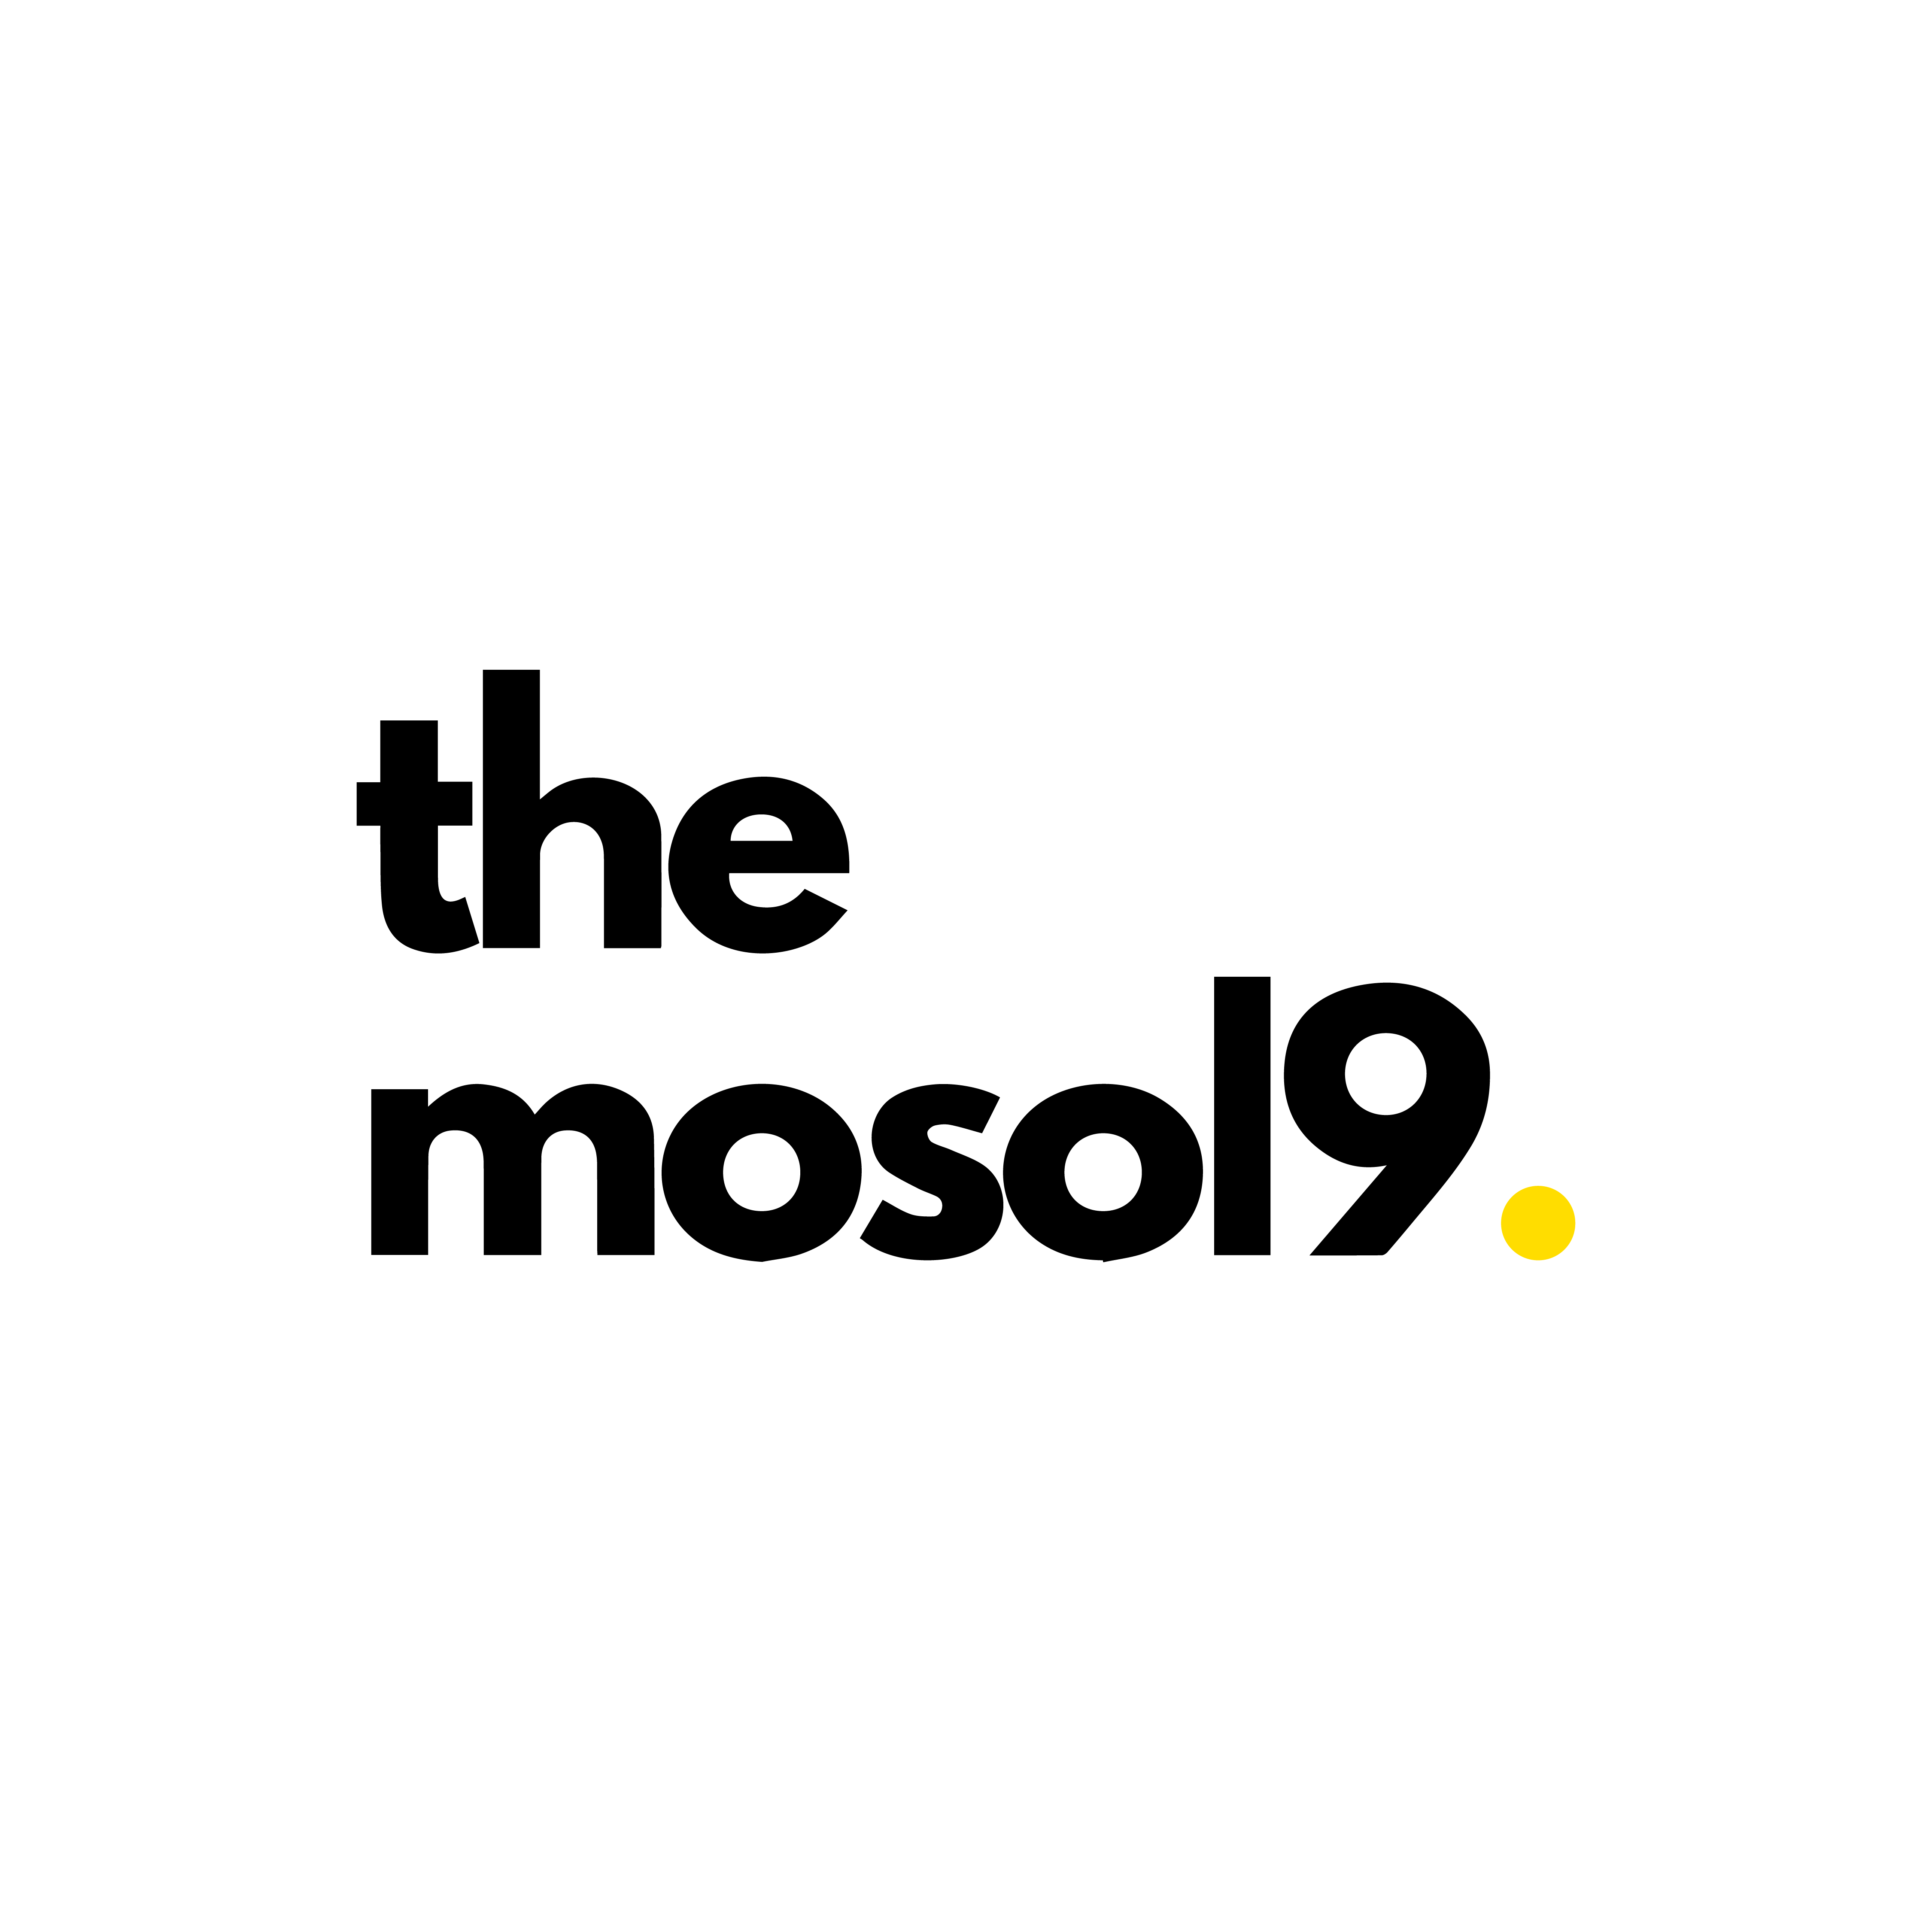 Digital Marketing Company - Mosol9 Logo